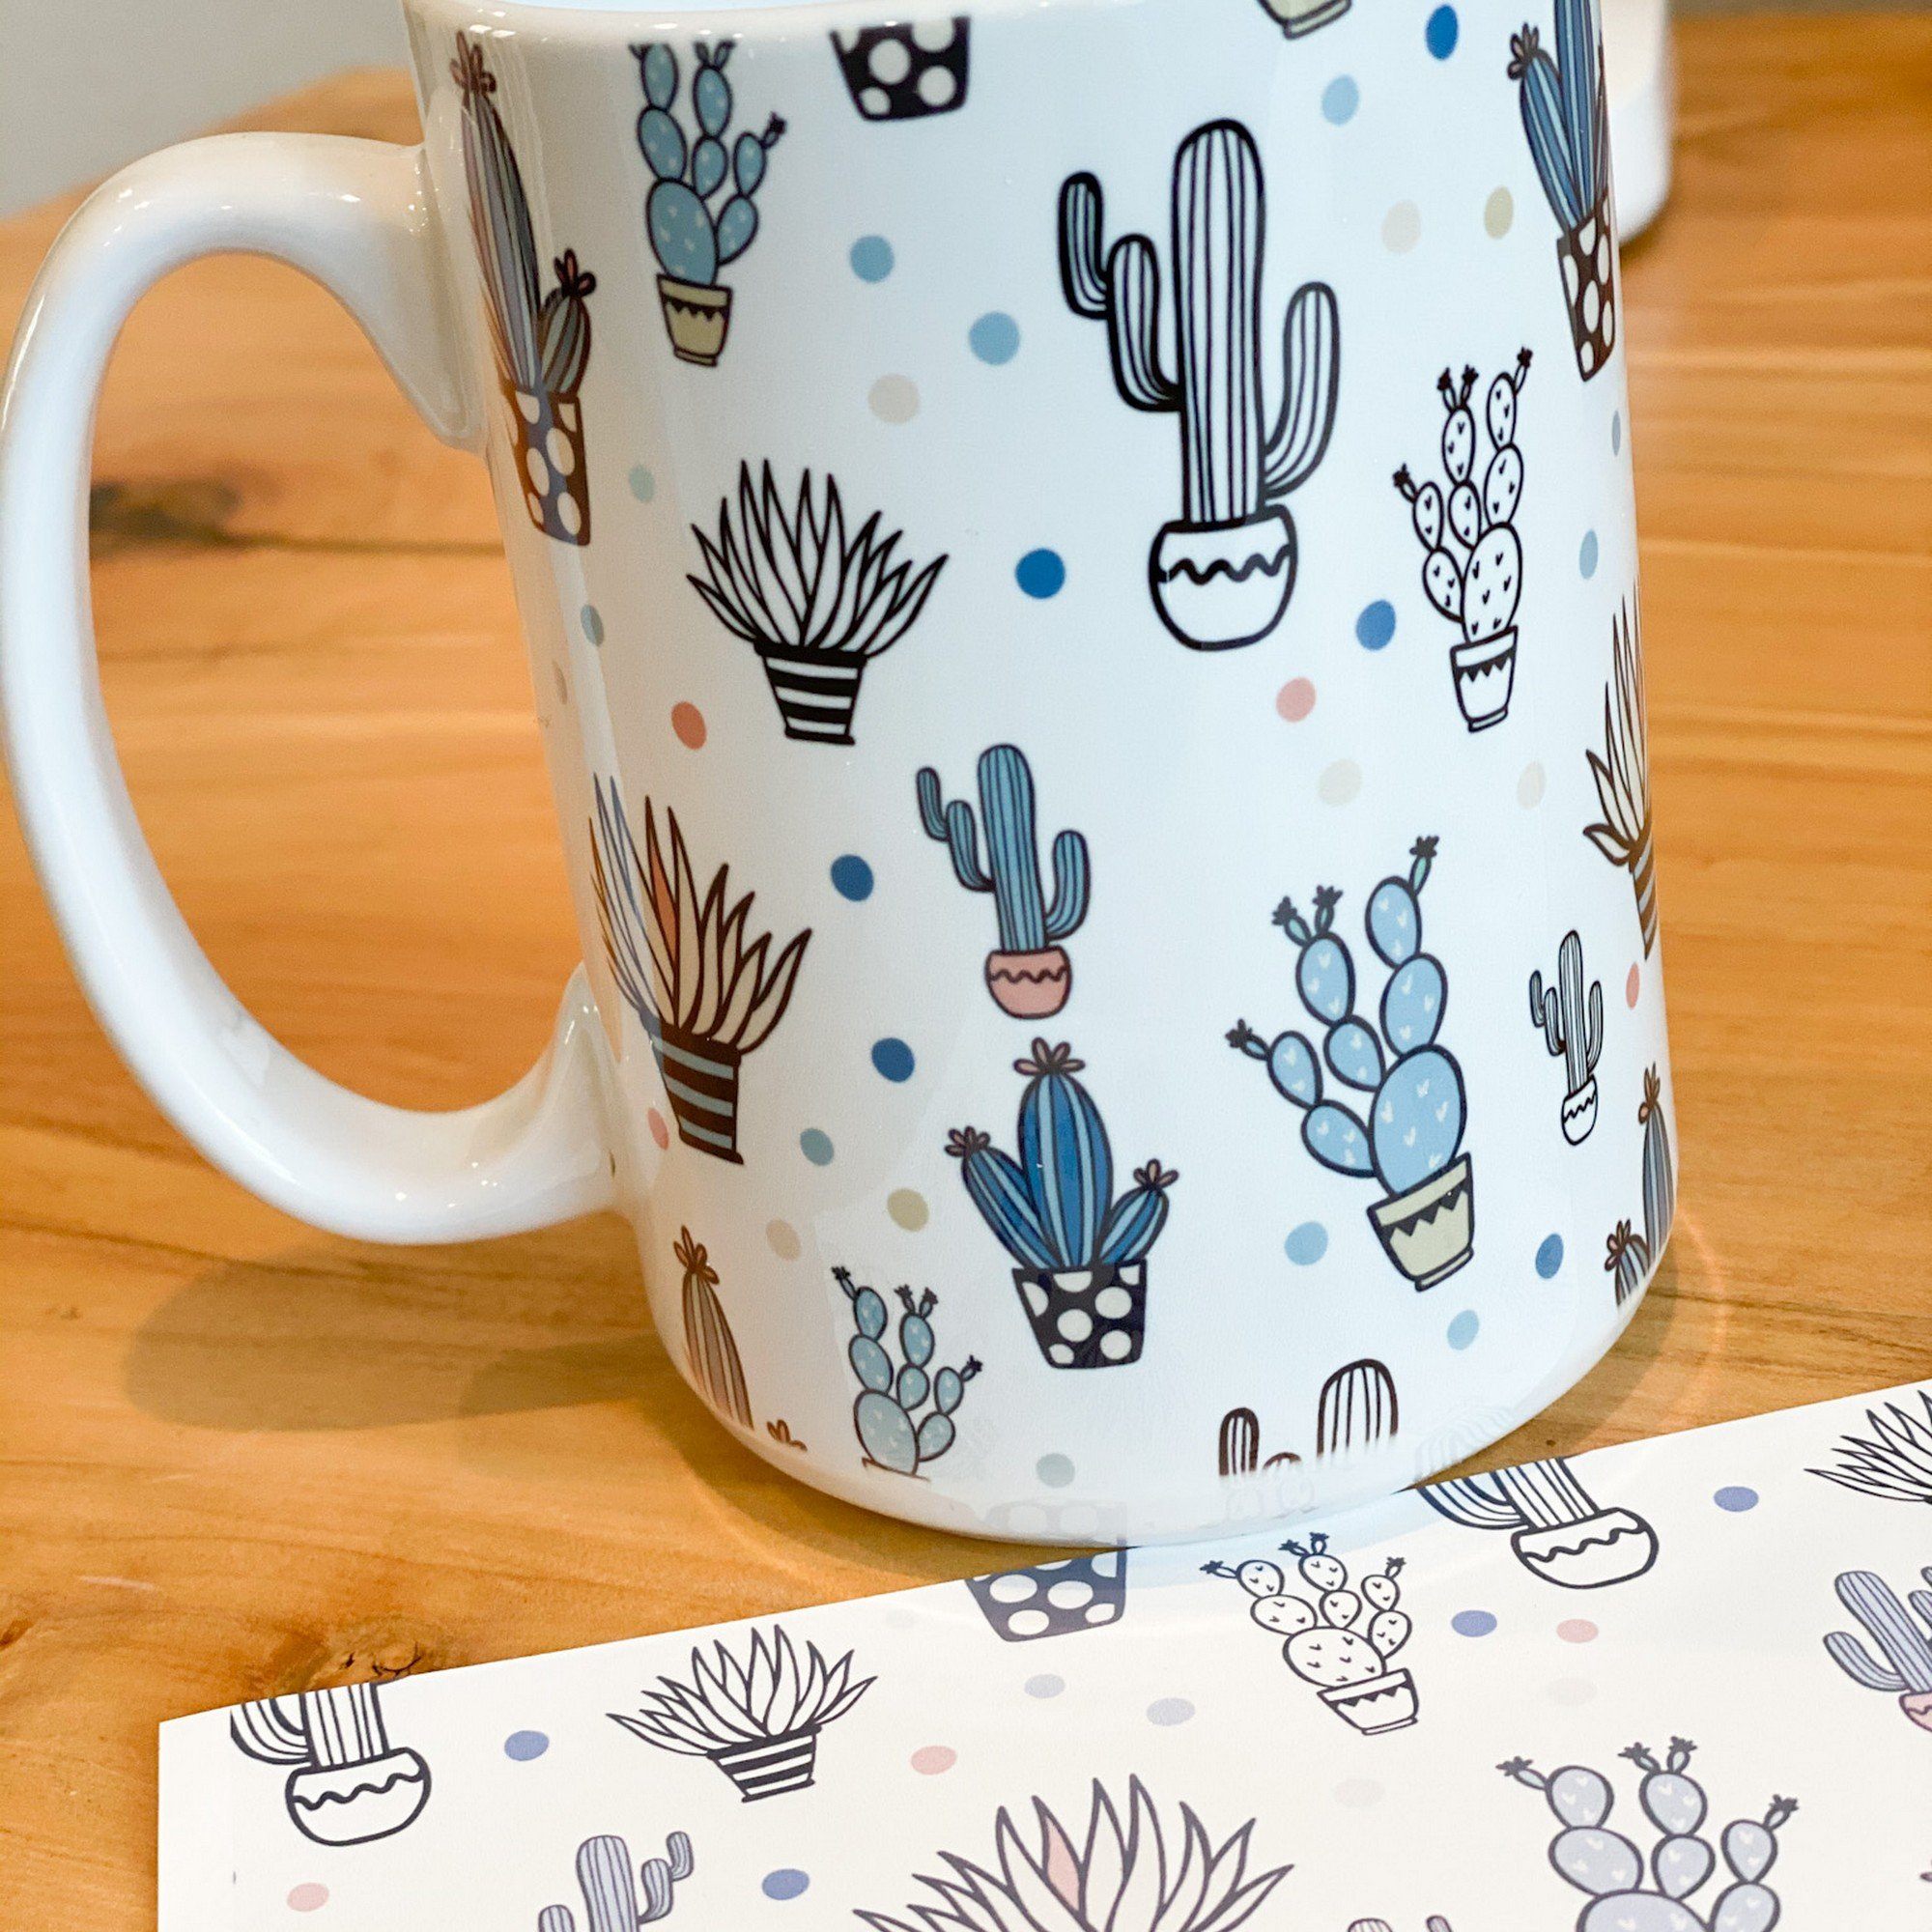 10 oz Insulated Mug – Blank Sublimation Mugs